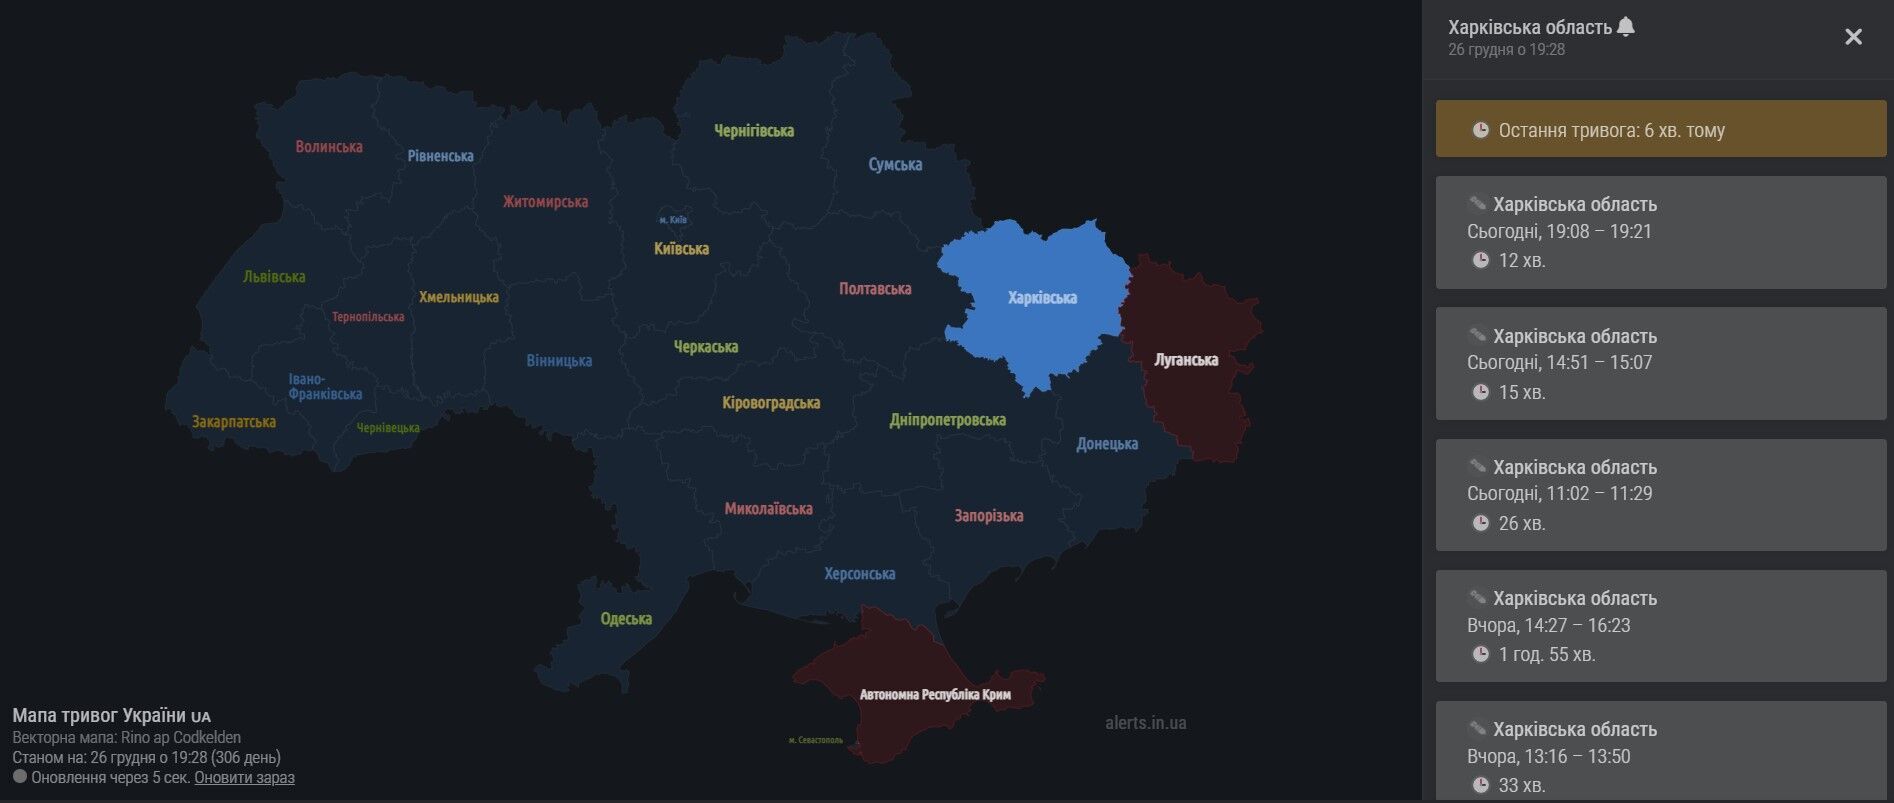 Харківська область: карта повітряних тривог